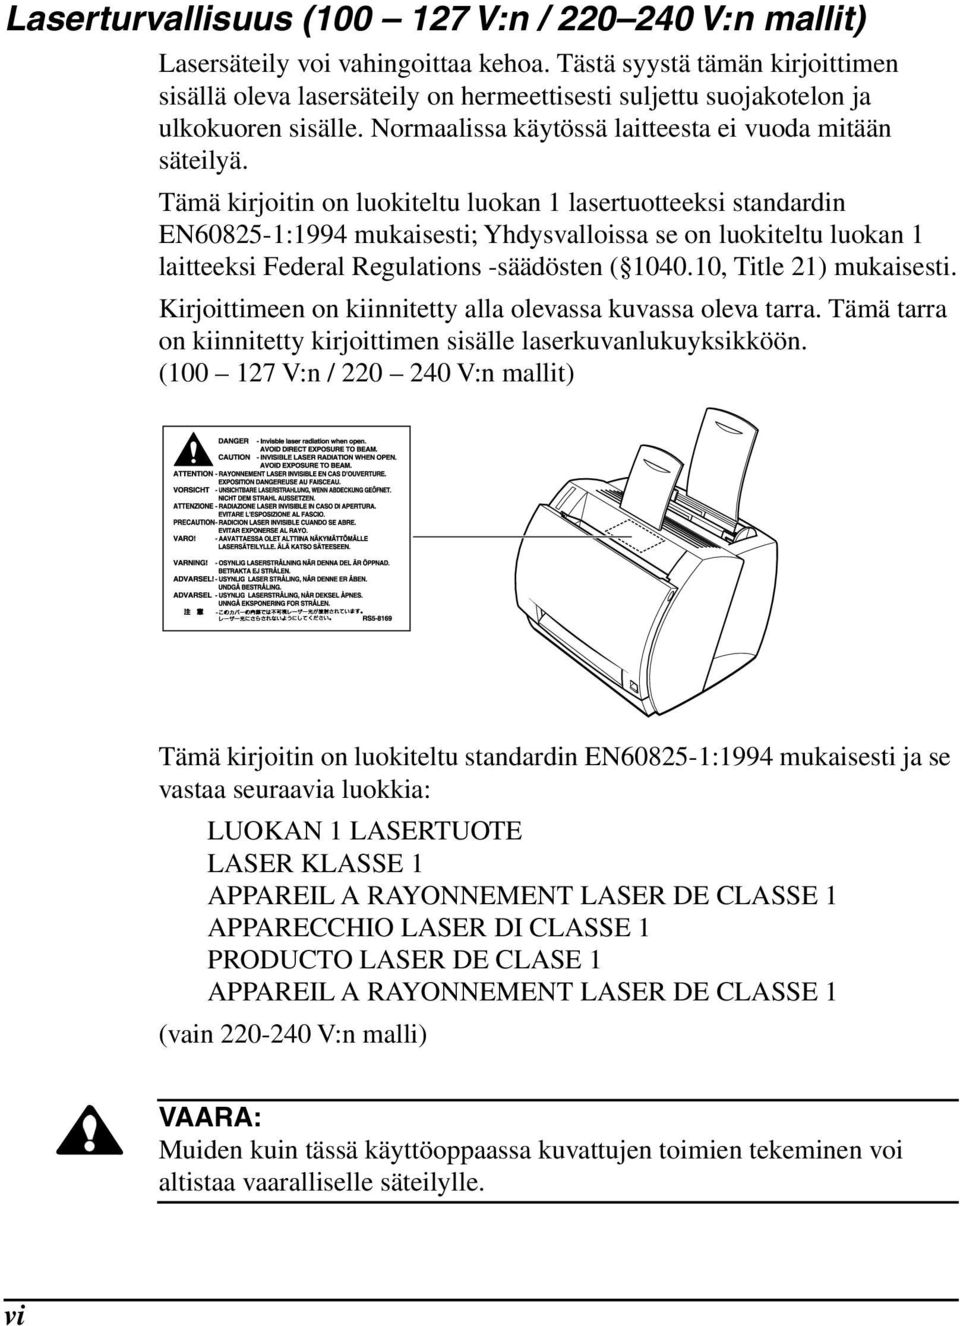 Tämä kirjoitin on luokiteltu luokan 1 lasertuotteeksi standardin EN60825-1:1994 mukaisesti; Yhdysvalloissa se on luokiteltu luokan 1 laitteeksi Federal Regulations -säädösten ( 1040.